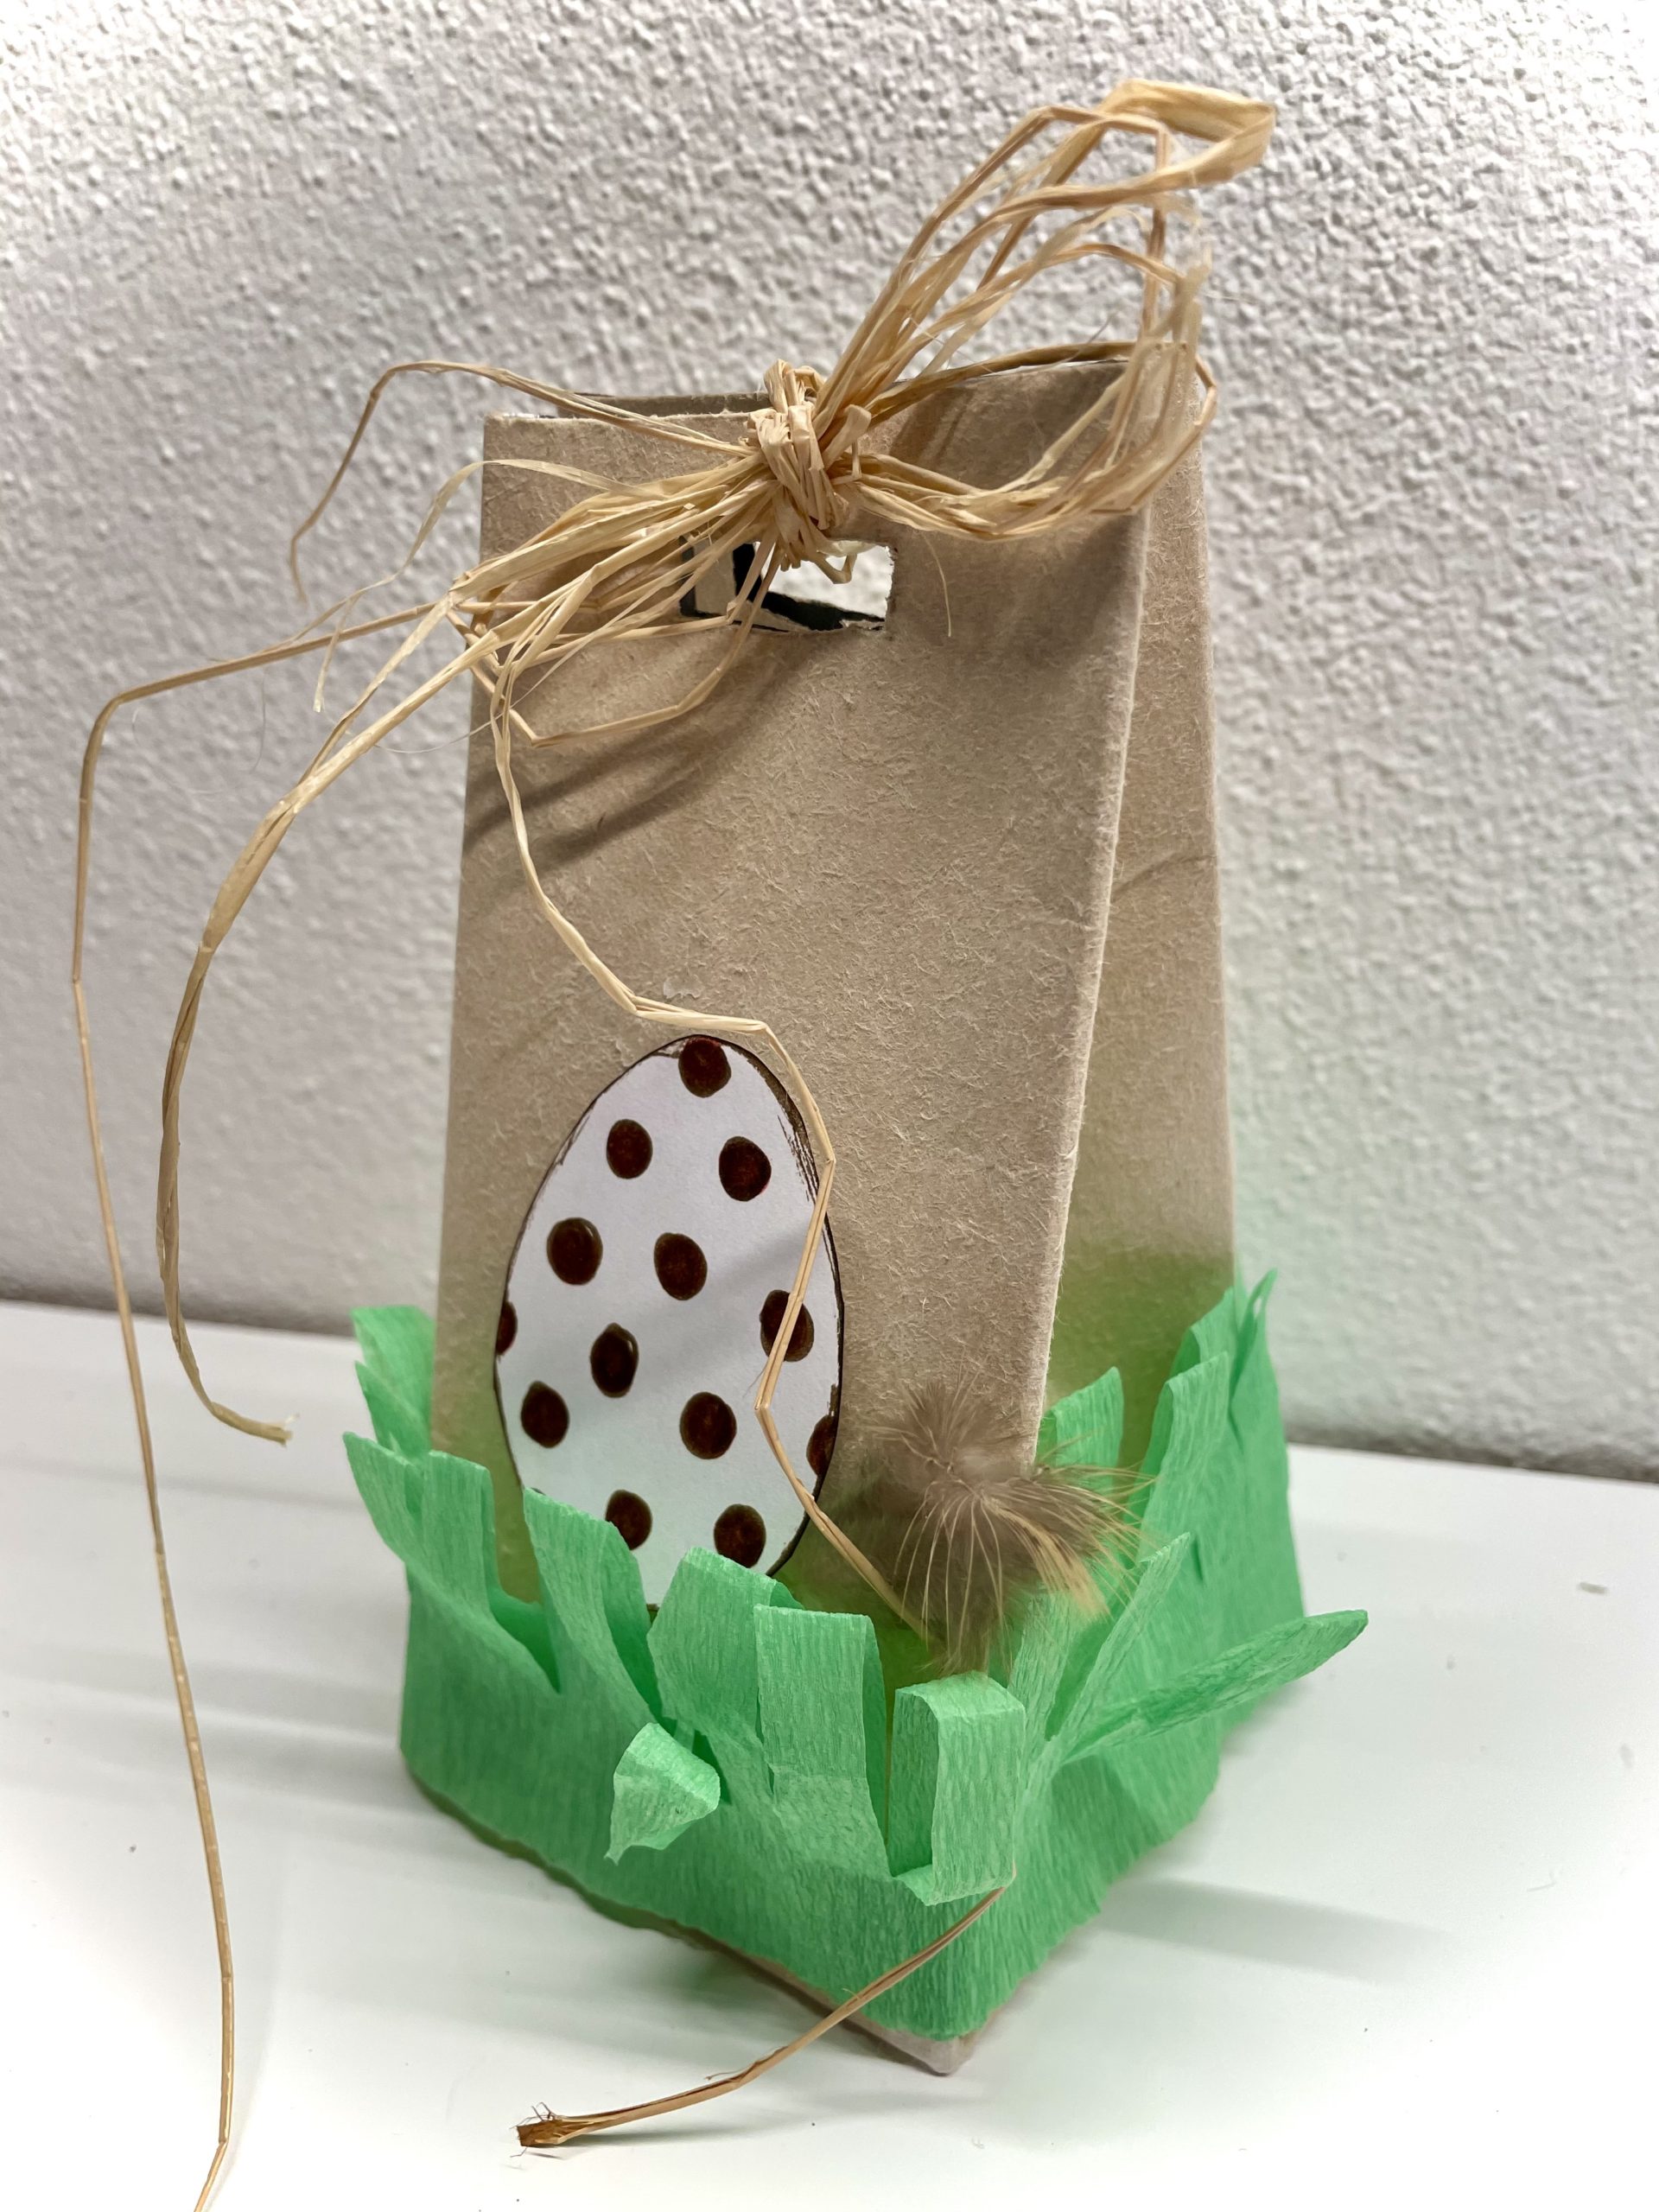 Bild zum Schritt 28 für das Bastel- und DIY-Abenteuer für Kinder: 'Fertig ist eure Ostertüte bzw. die kleine  Geschenkverpackung.'